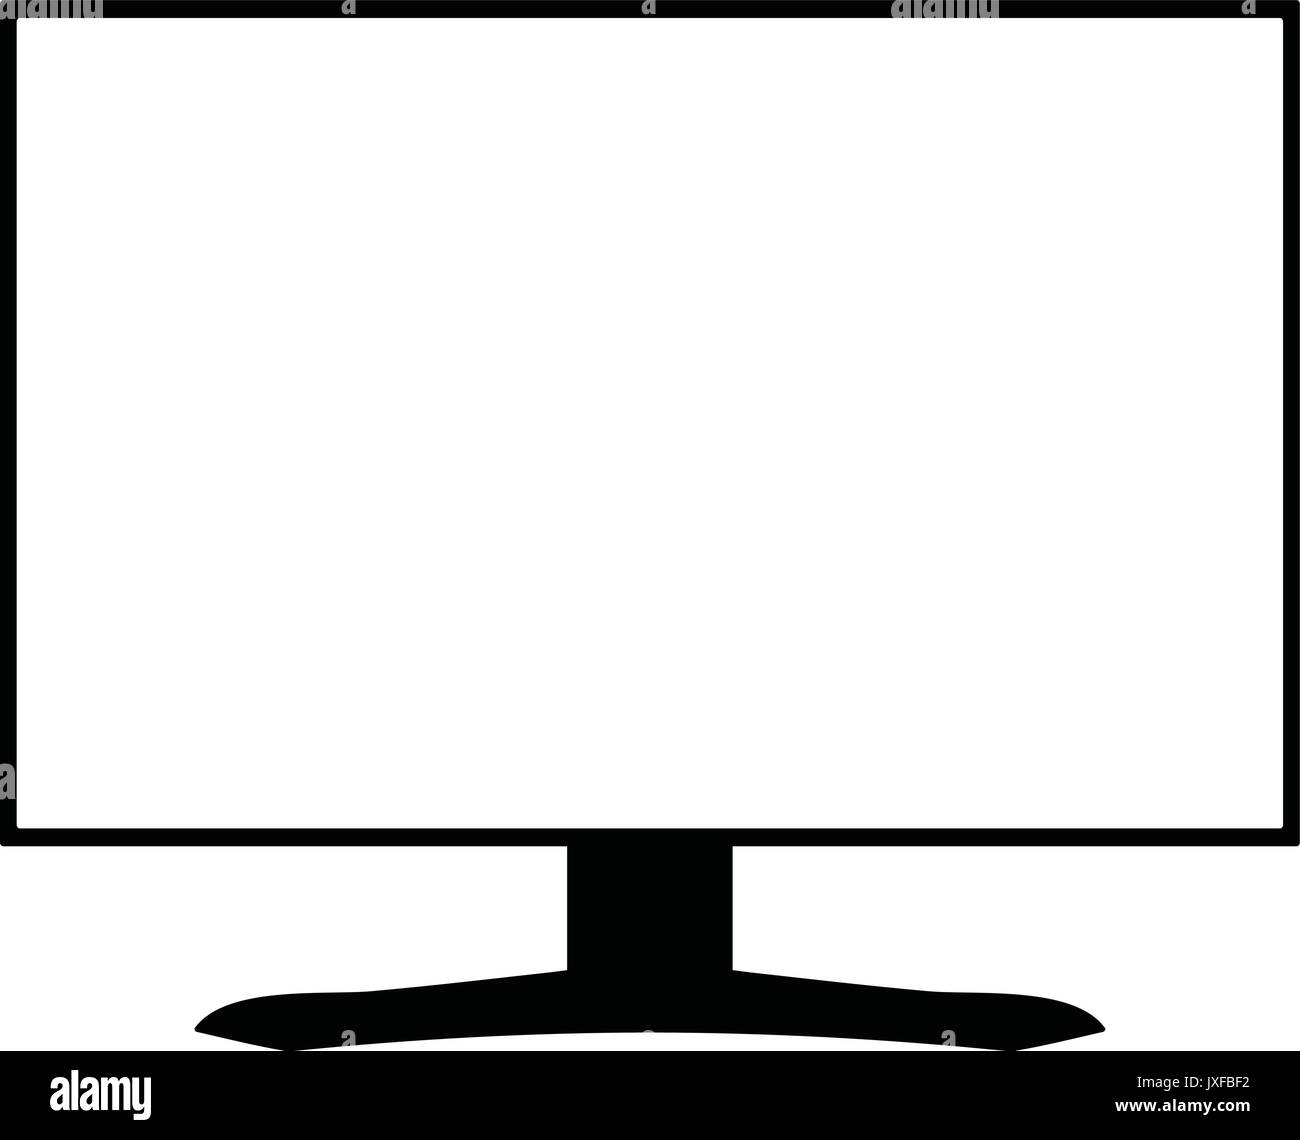 Una silueta en blanco y negro de un monitor de ordenador con una